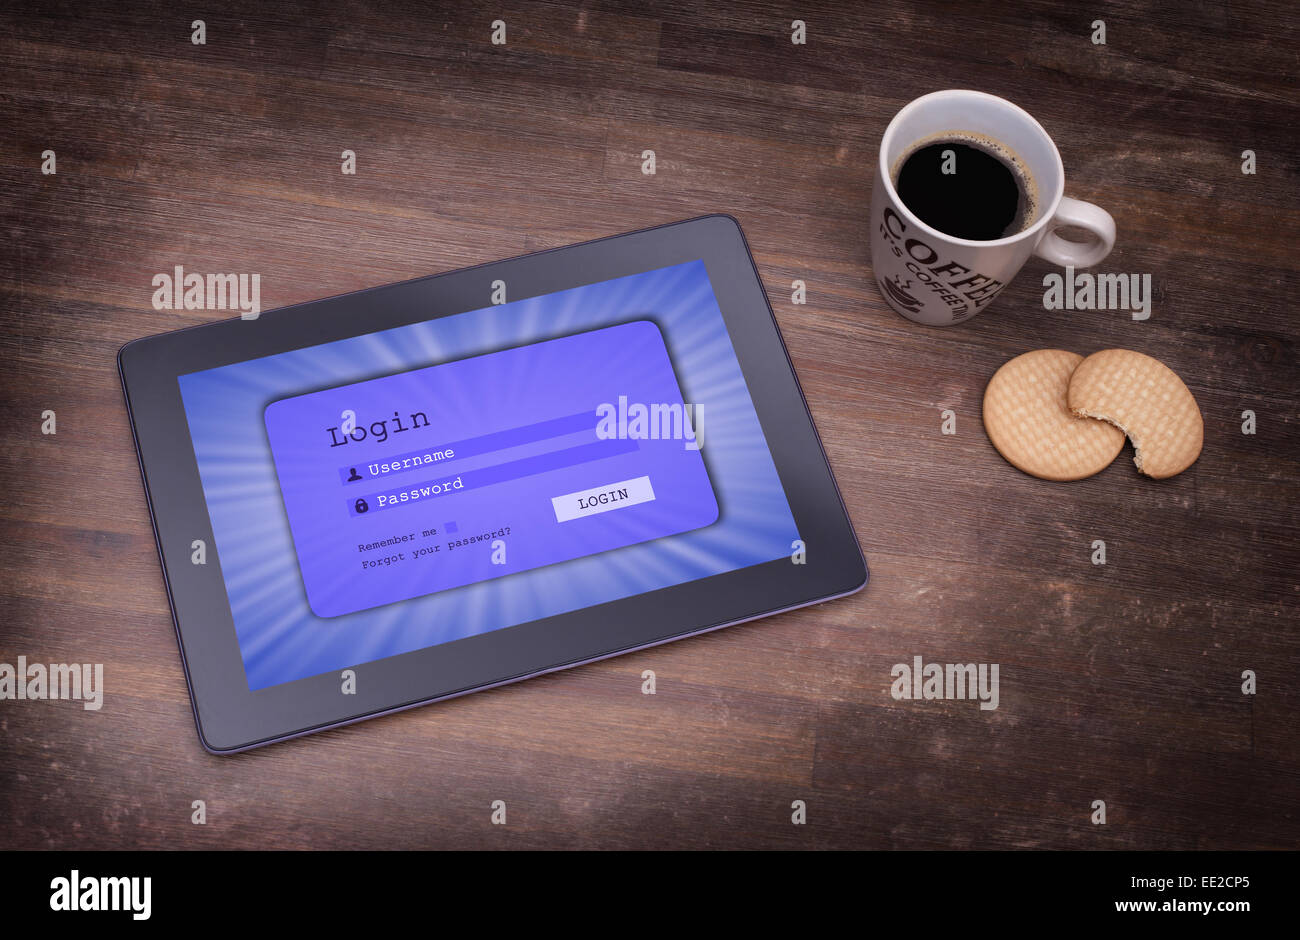 Login-Schnittstelle auf Tablet - Benutzernamen und das Kennwort, blau Stockfoto